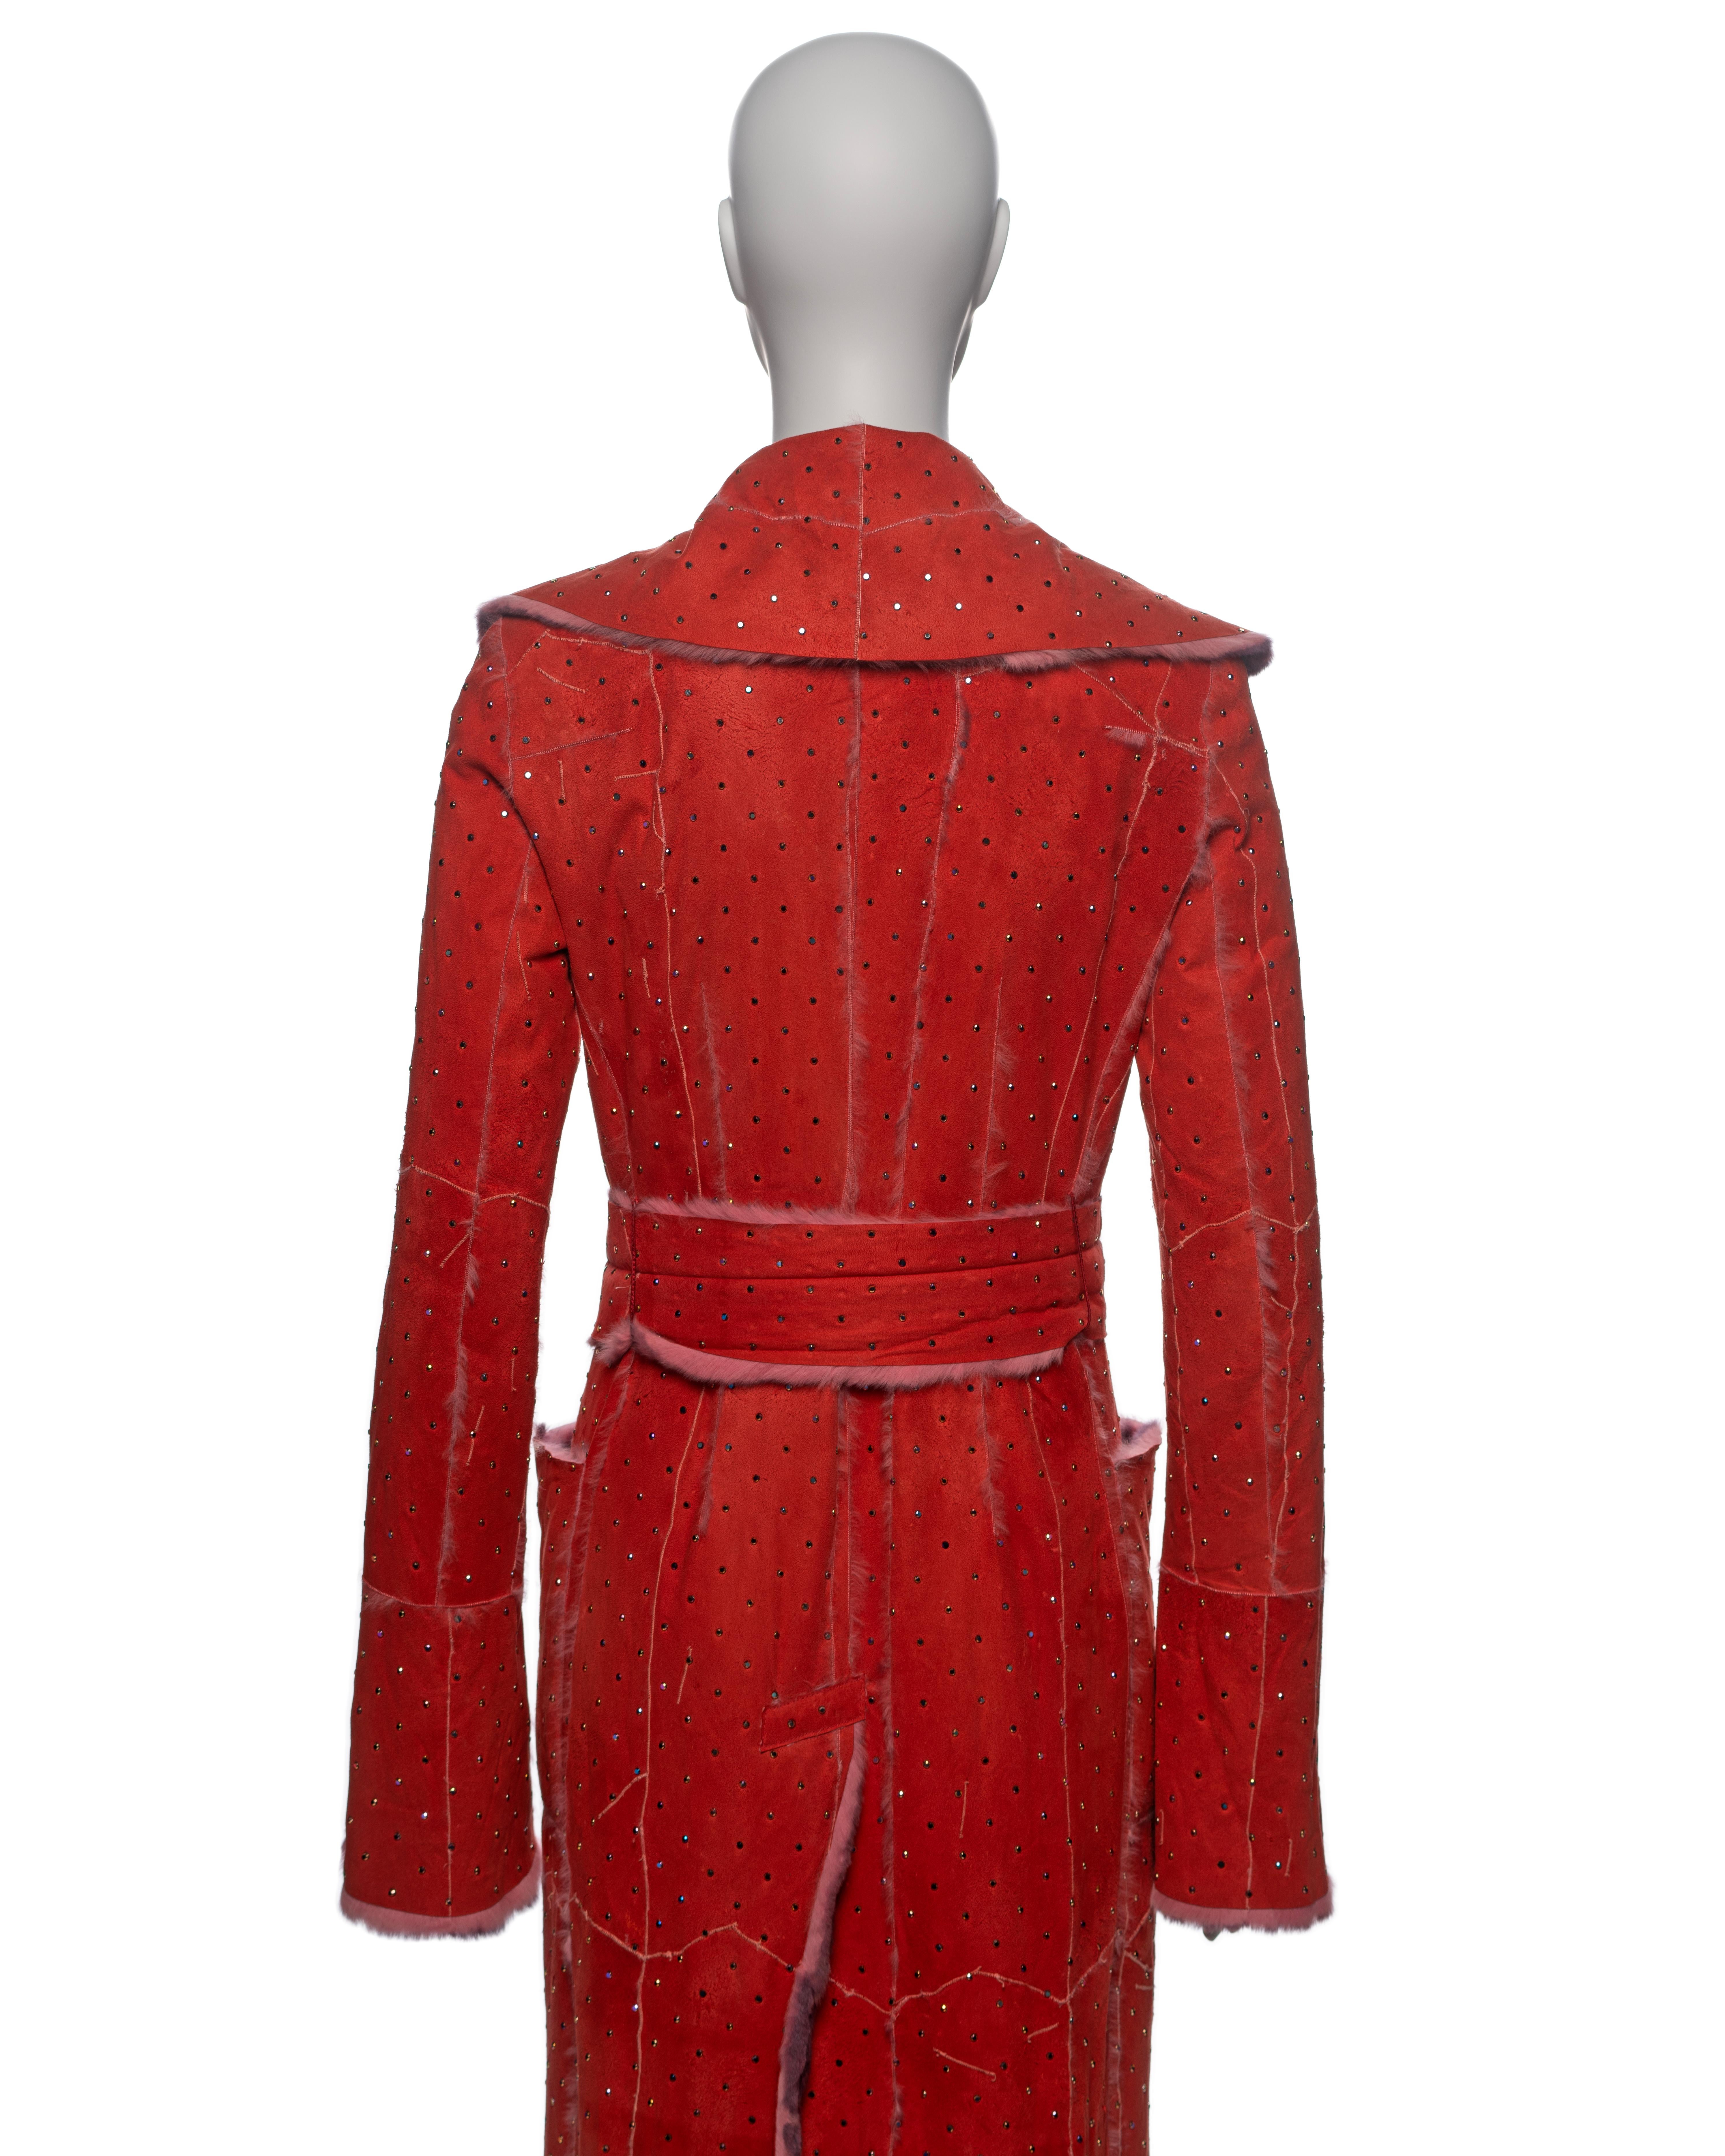 Dolce & Gabbana Crystal Adorned Red Mink Floor-Length Coat, FW 2000 For Sale 9